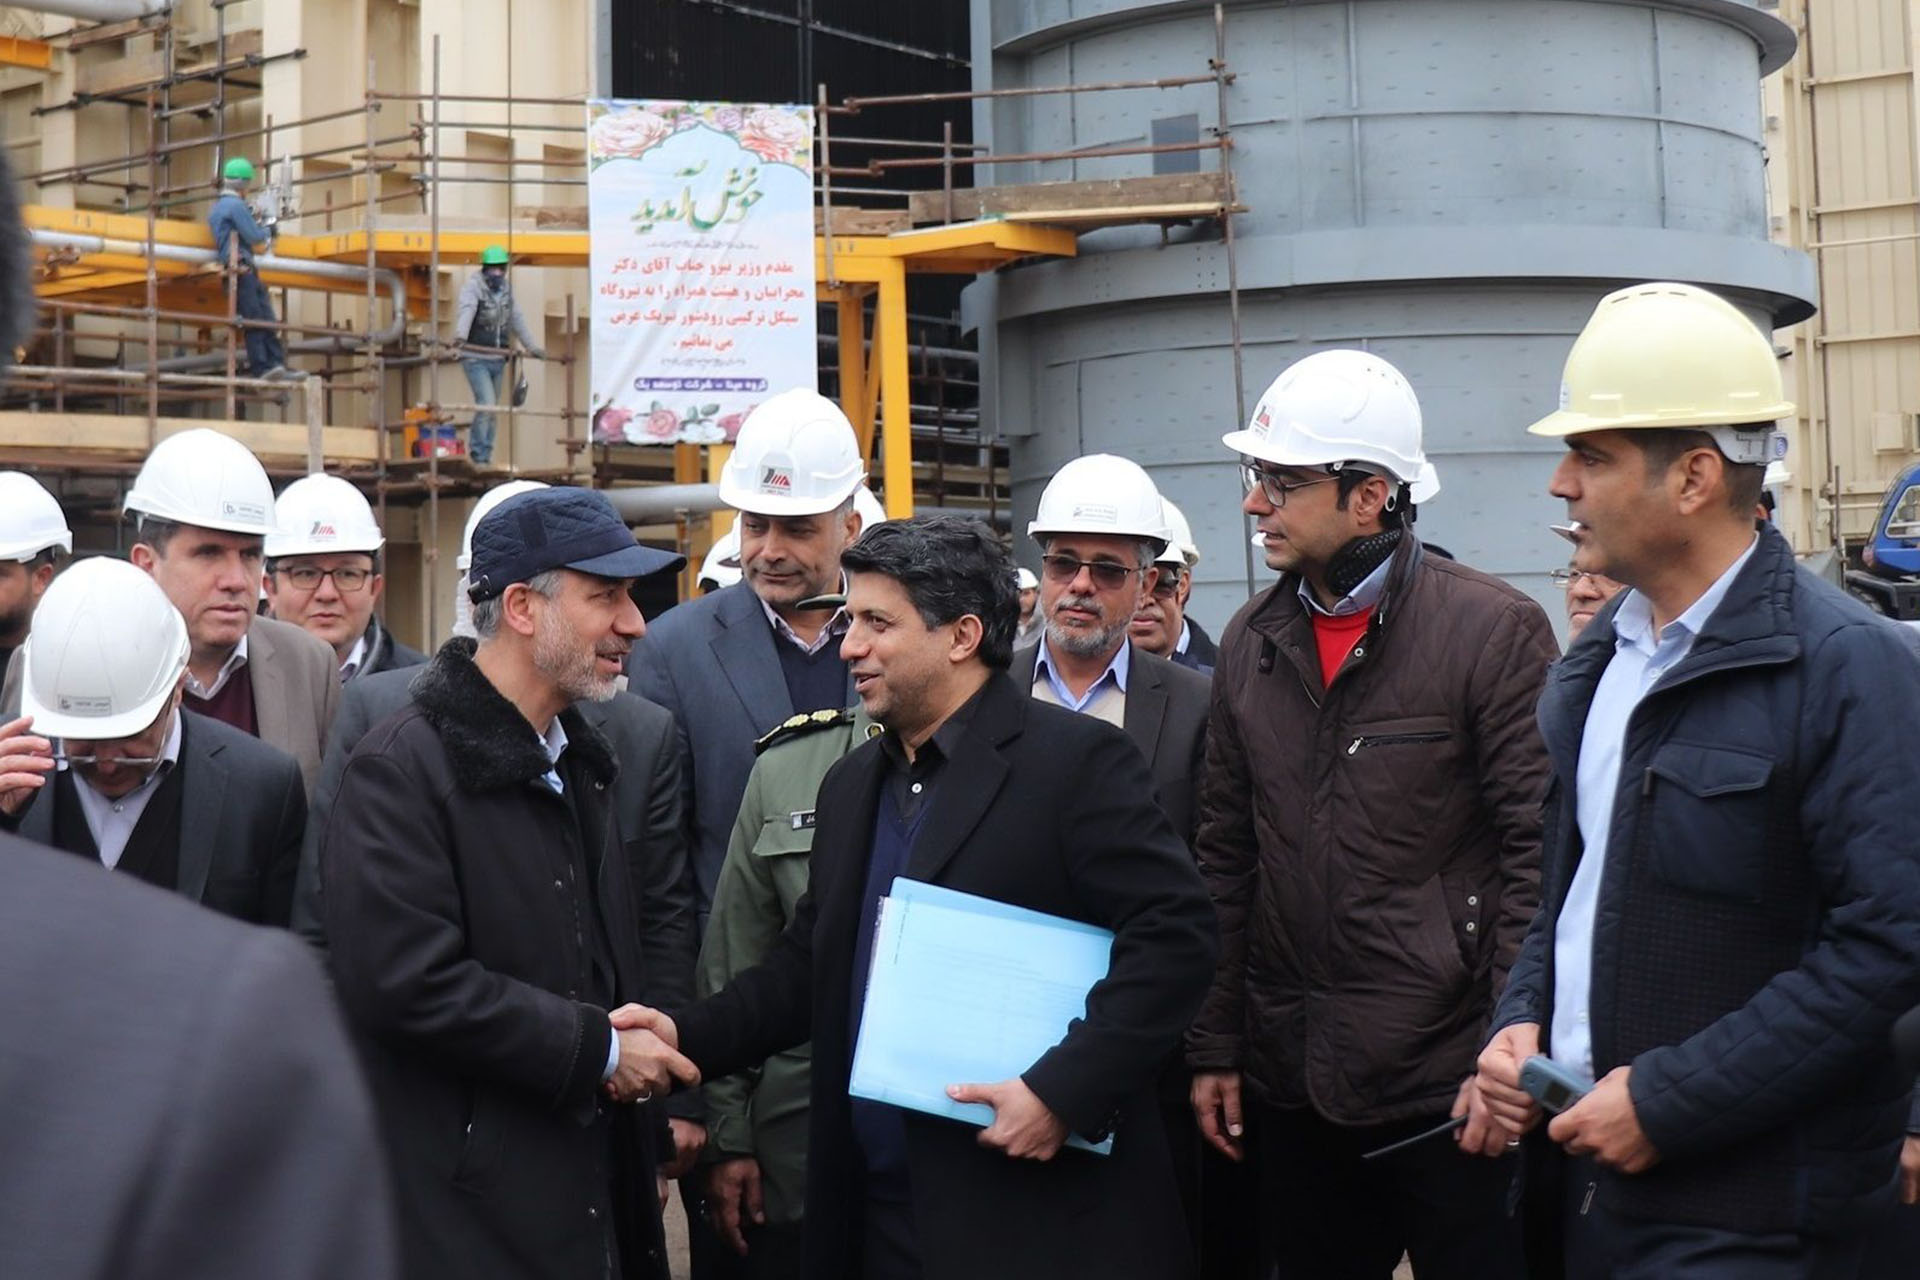 وزیر نیرو از پروژه بخش بخار نیروگاه رودشور بازدید کرد